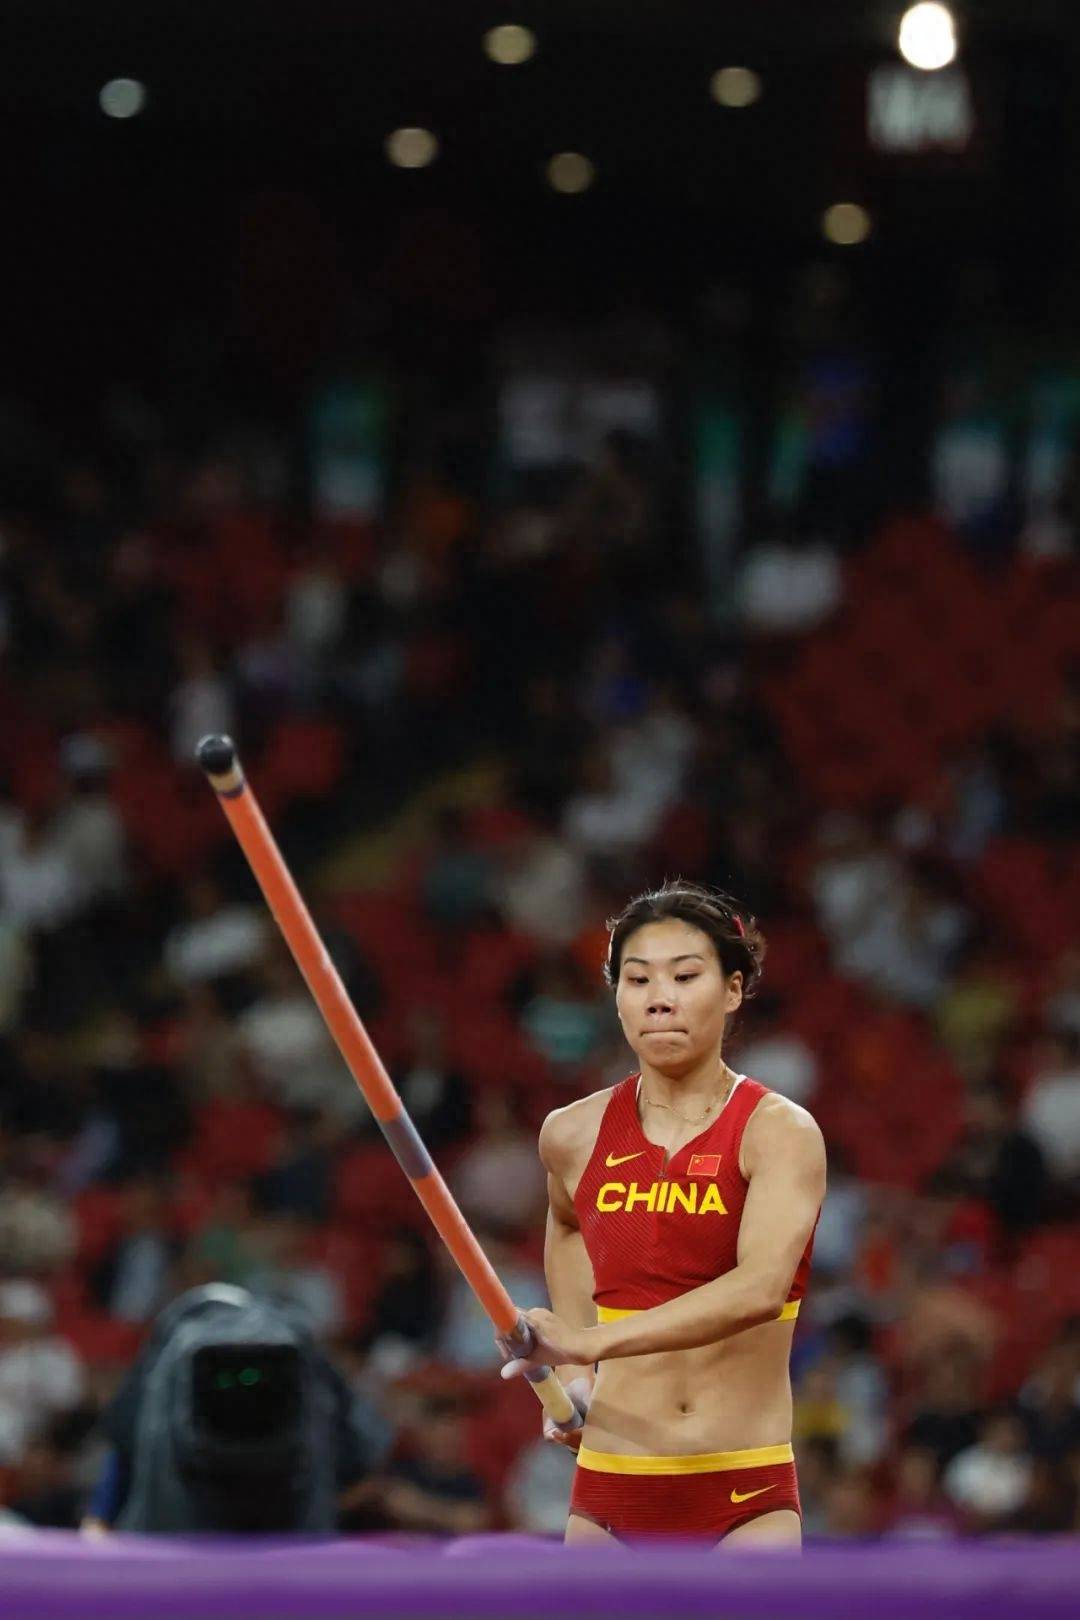 女子撑竿跳高比赛,中国派出亚洲纪录保持者李玲和后起之秀牛春格两人